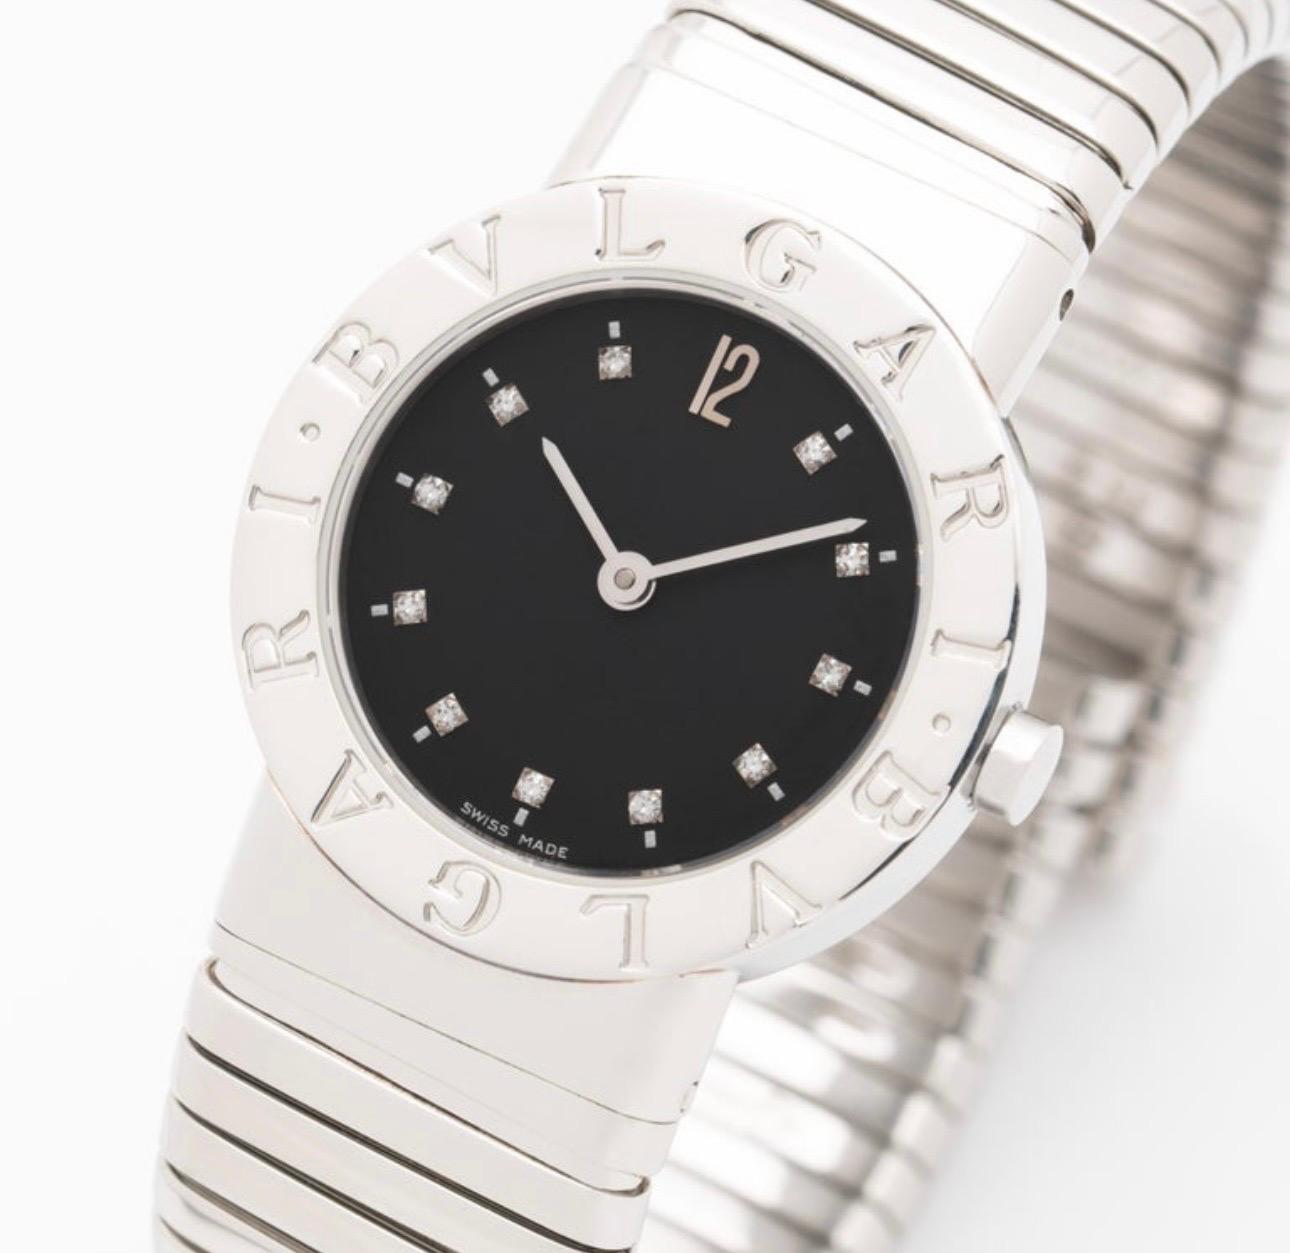 Superbe montre Bvlgari en acier inoxydable, serpentine, avec index en diamants. Ces montres iconiques intemporelles sont parfaites pour tous les jours, où l'on s'habille le soir, la montre garde parfaitement l'heure et vient juste d'avoir sa pile